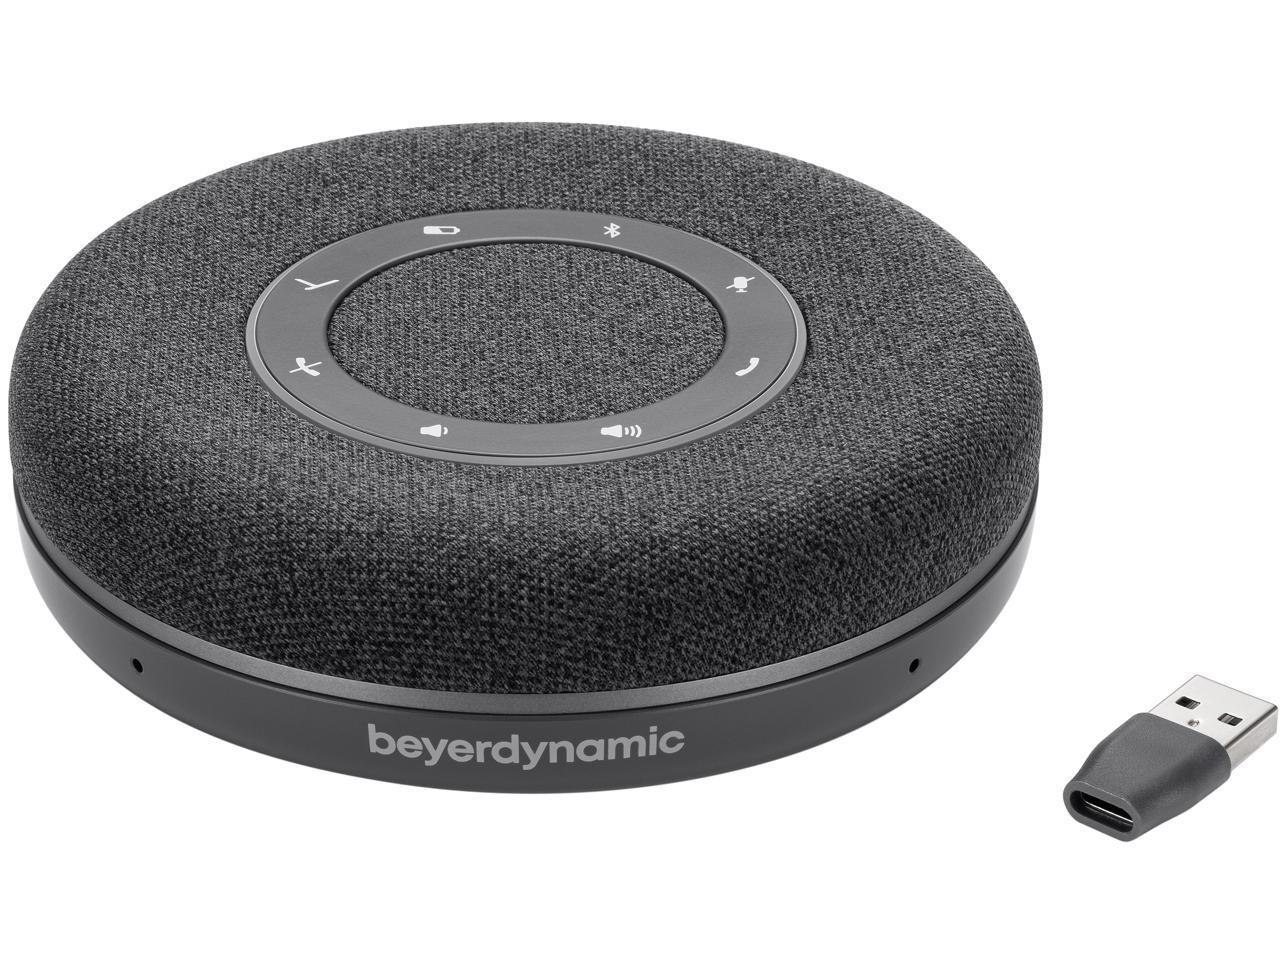 Beyerdynamic Space Personal Speakerphone - Charcoal